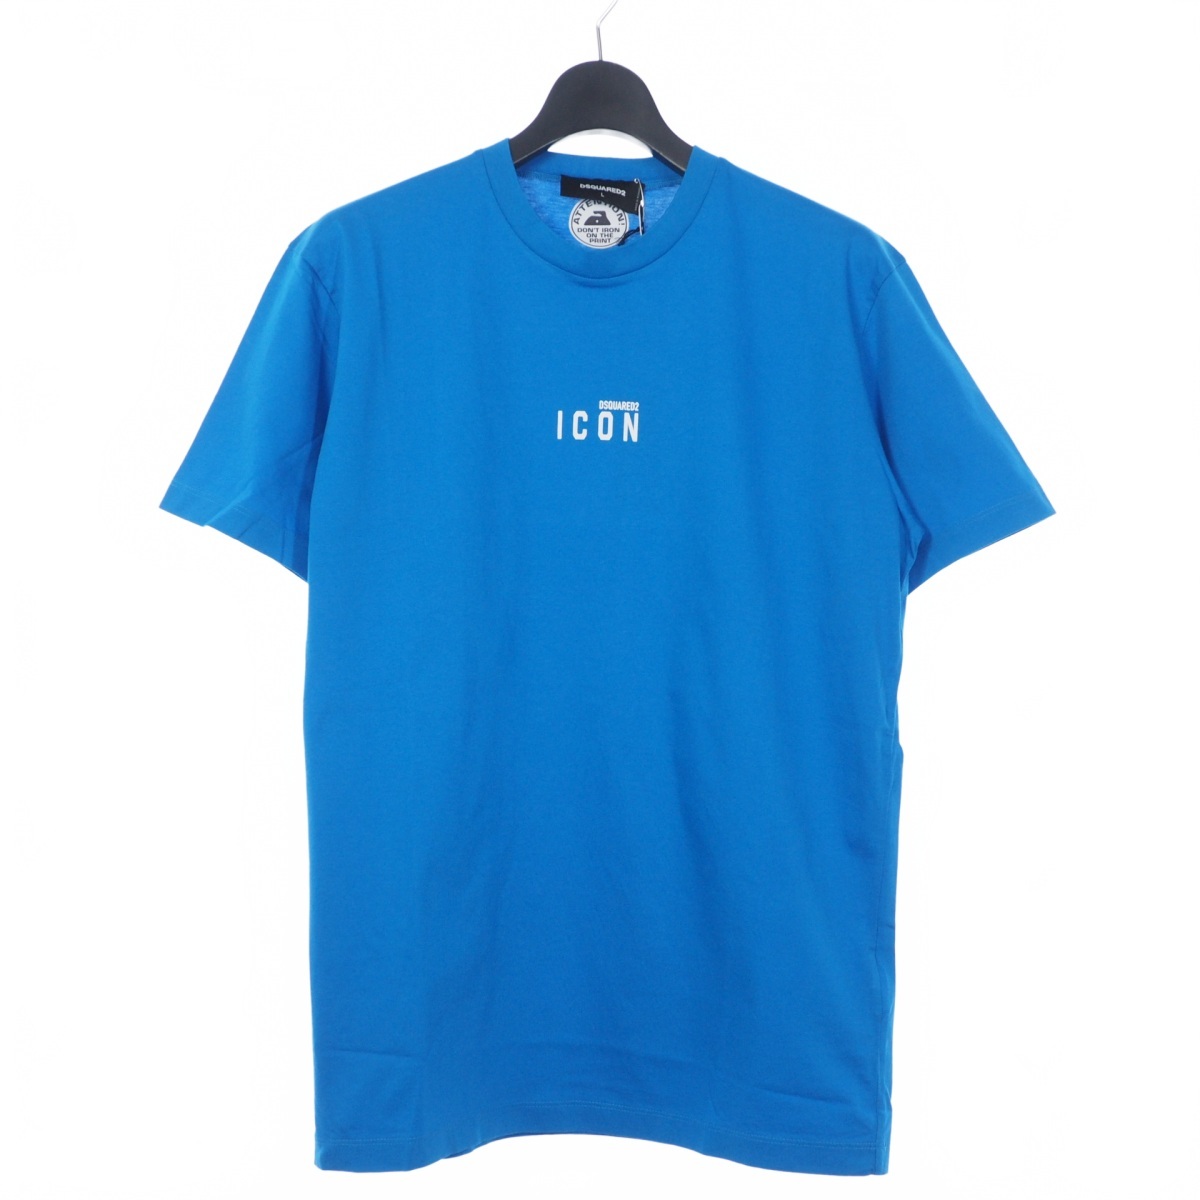 ディースクエアード DSQUARED2 22SS Icon Mini Logo Tシャツ カットソー 半袖 クルーネック L ブルー 青 S79GC0010 国内正規 メンズ